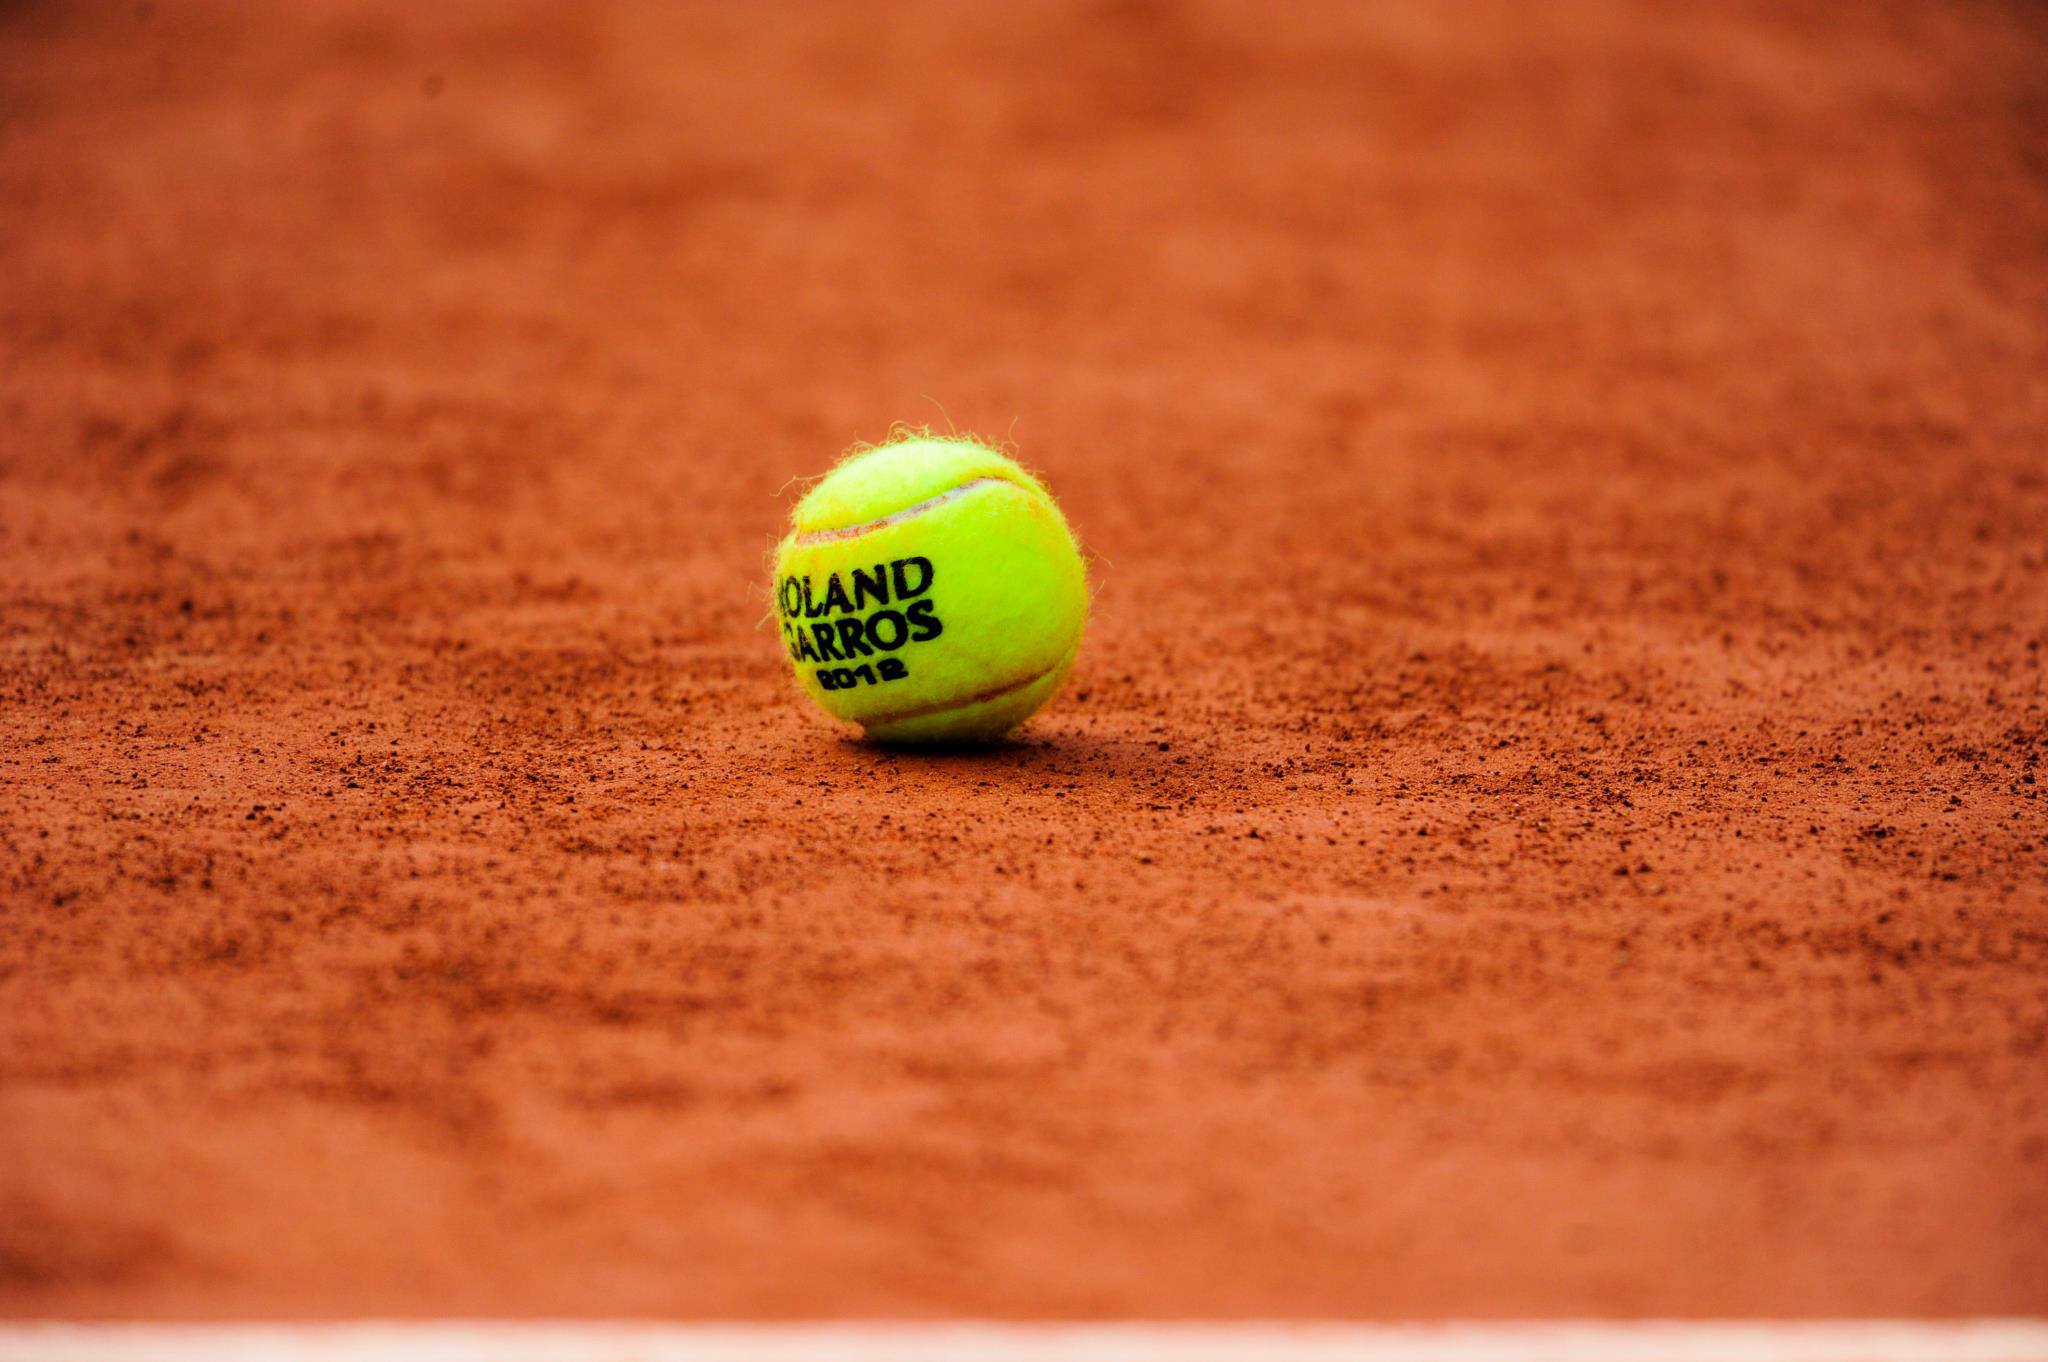 Roland Garros Widescreen 2 HD Wallpaper. Tennis